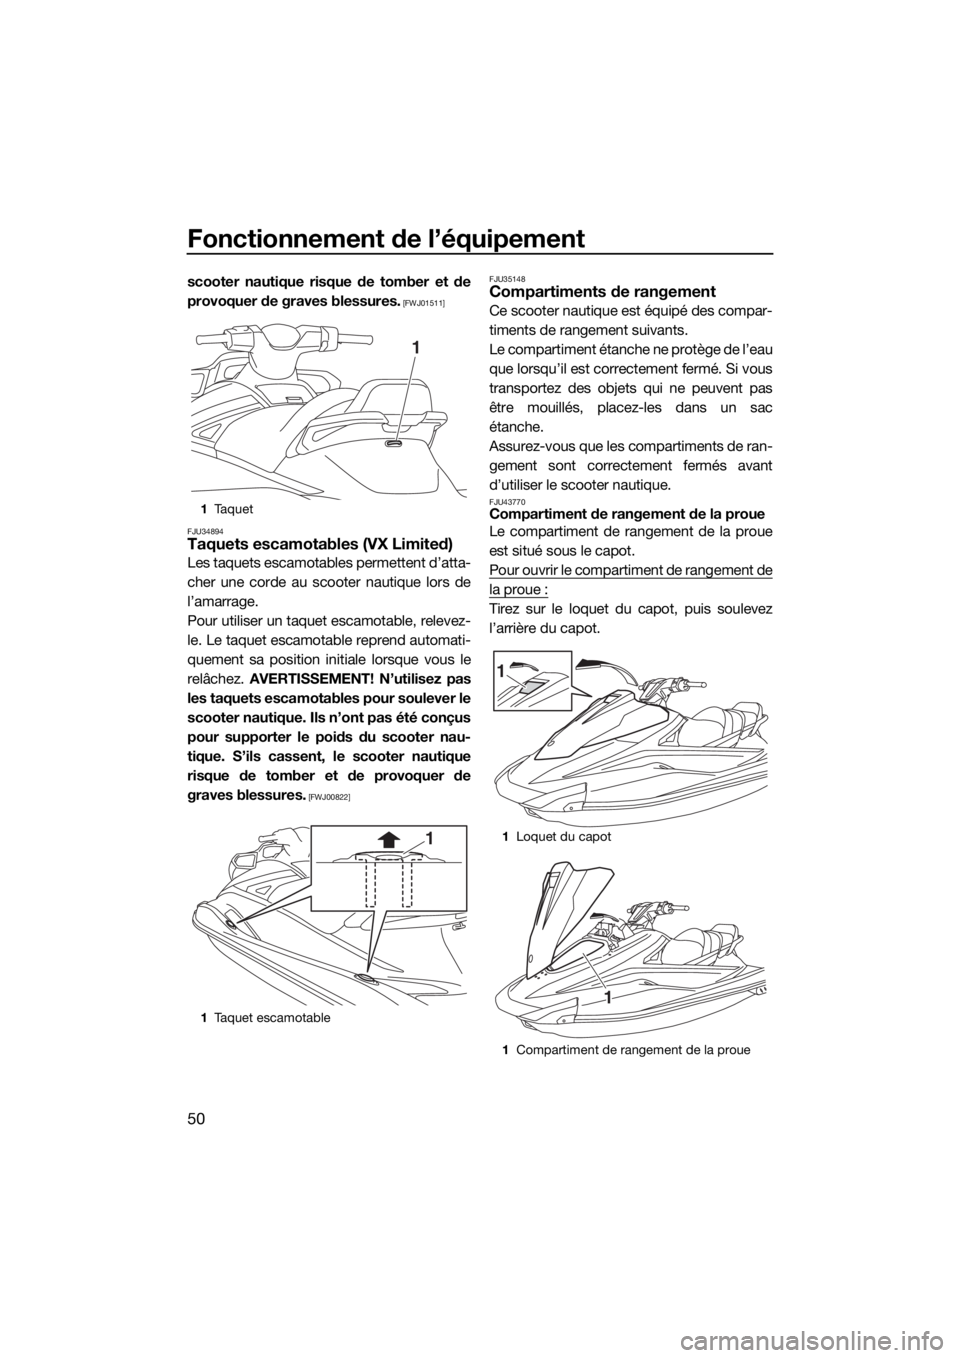 YAMAHA VX 2020  Notices Demploi (in French) Fonctionnement de l’équipement
50
scooter nautique risque de tomber et de
provoquer de graves blessures.
 [FWJ01511]
FJU34894
Taquets escamotables (VX Limited)
Les taquets escamotables permettent d